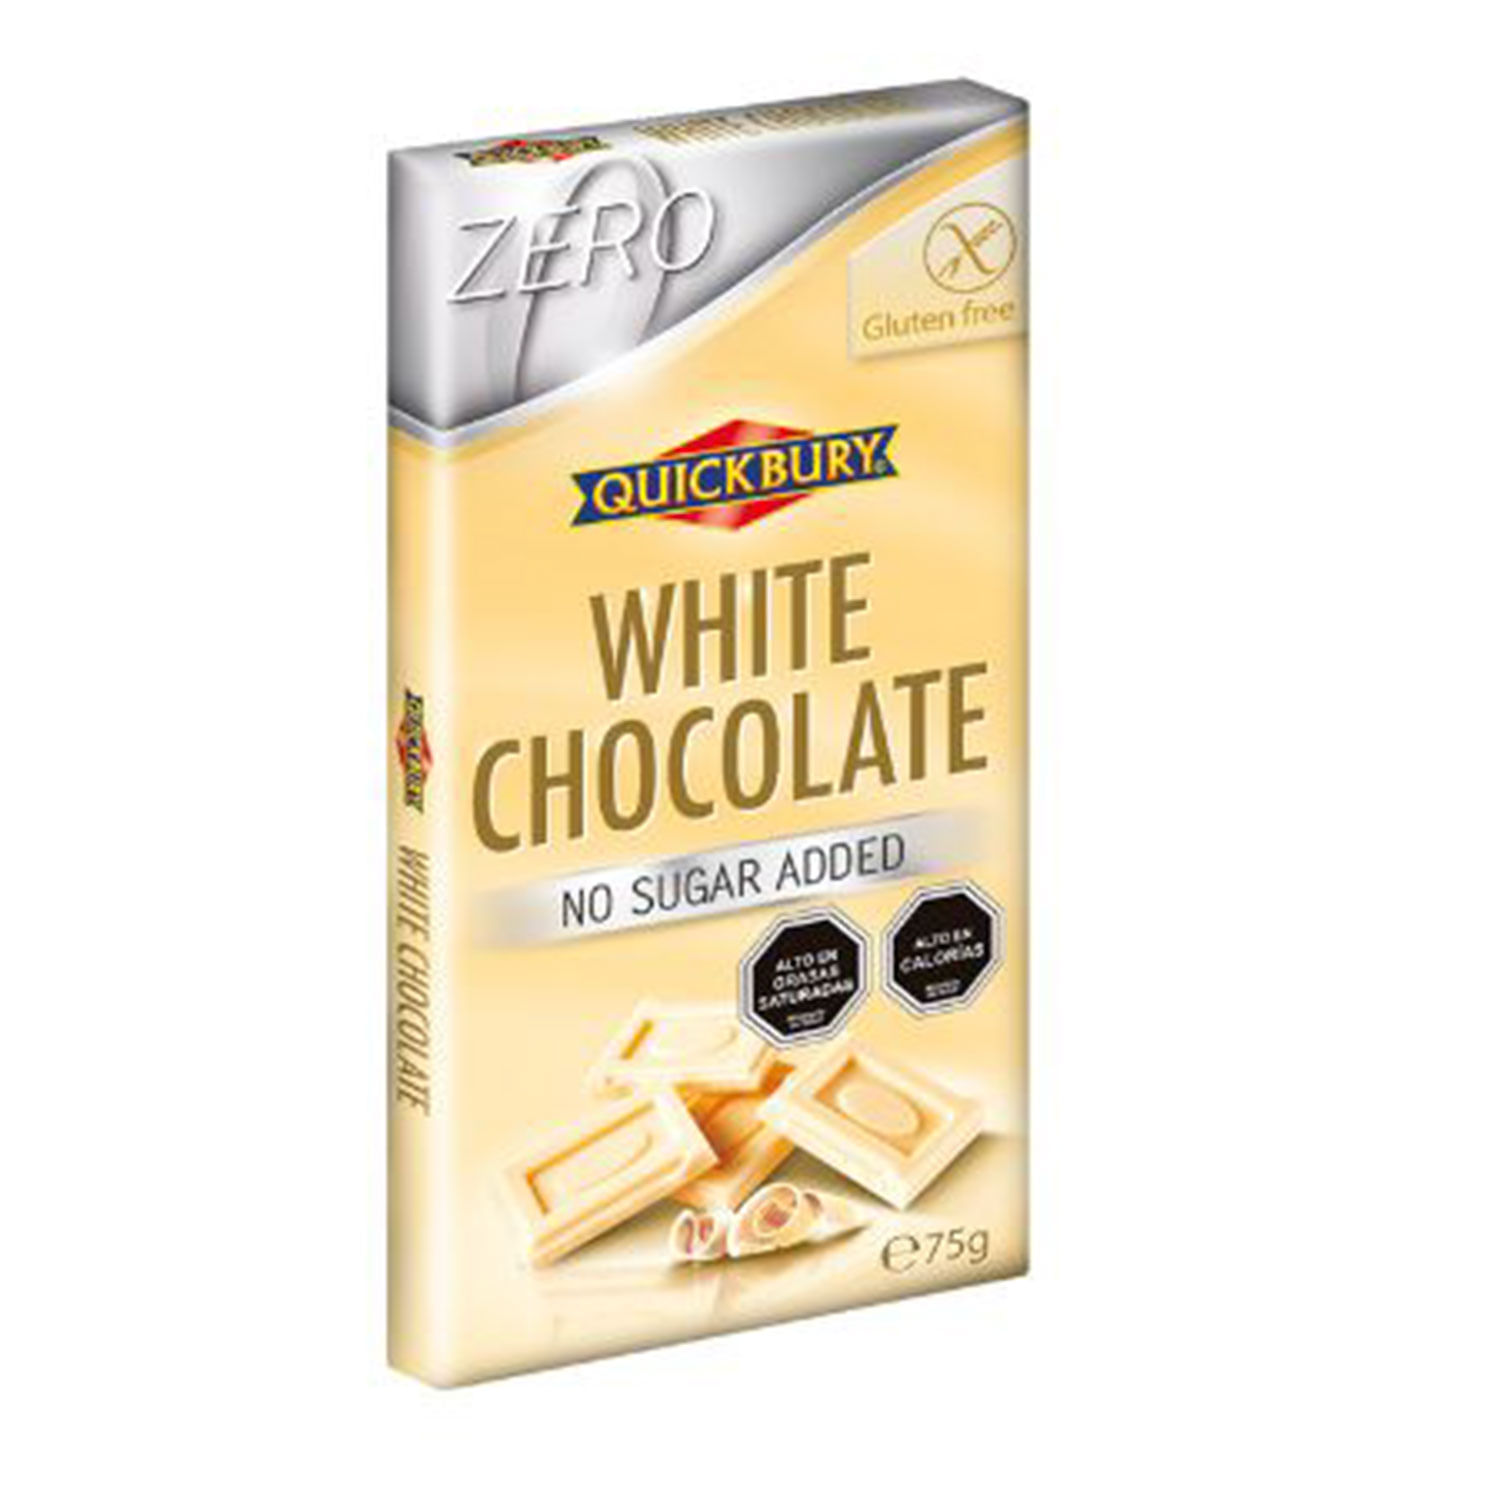 Chocolate blanco sin azúcar añadido Trapa 90 g - Supermercados DIA